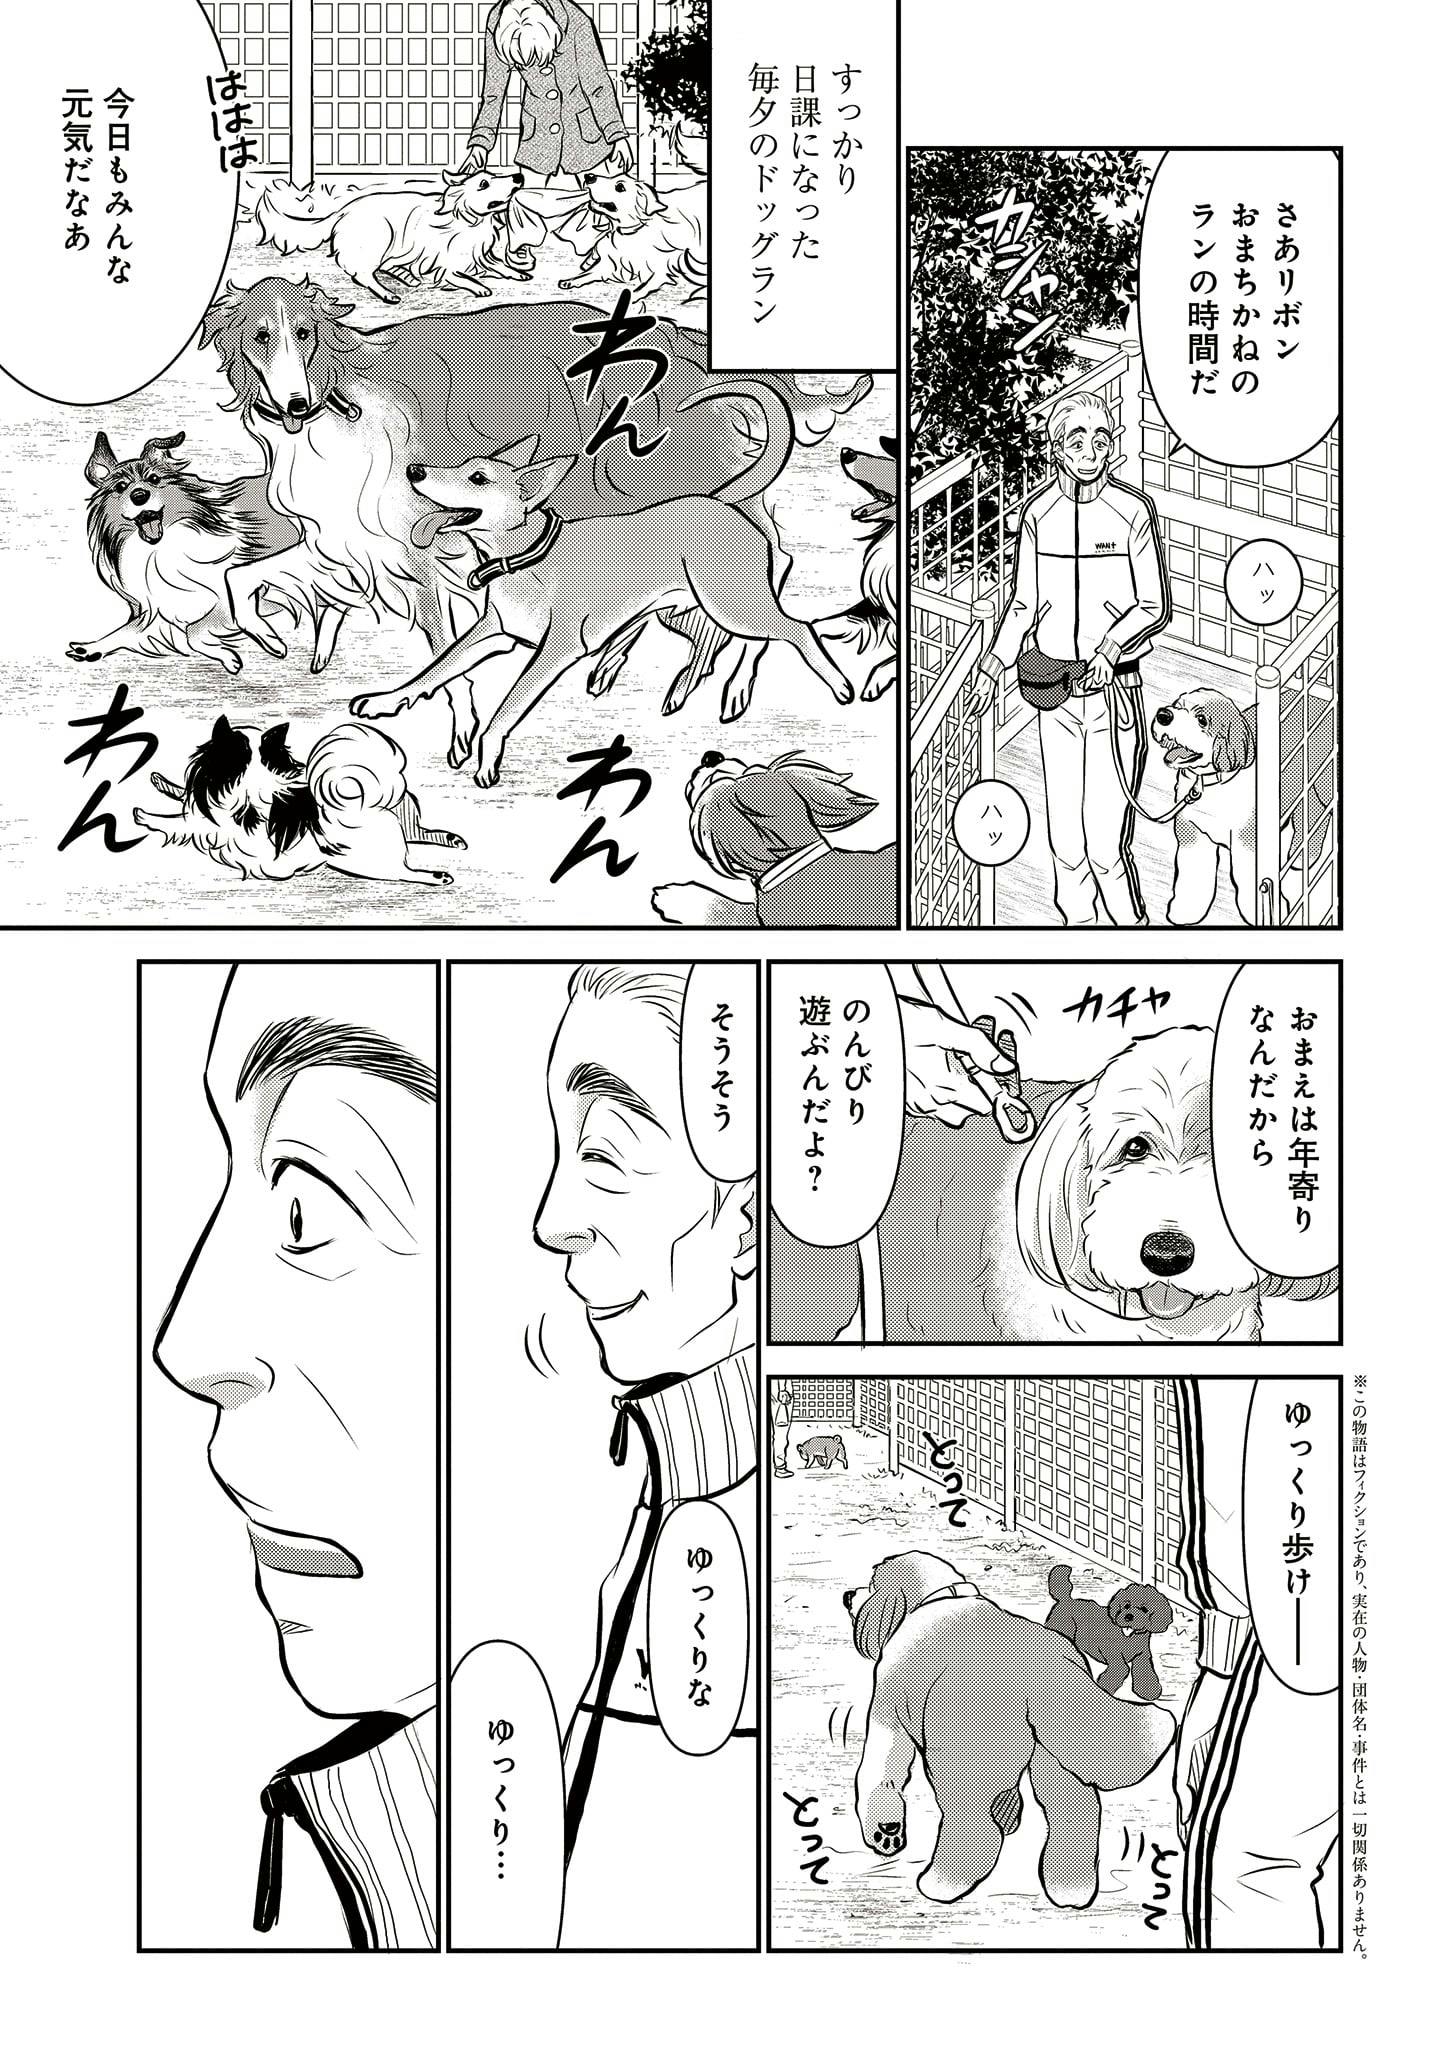 ドッグトレーニング漫画『DOG SIGNAL』34話目　1/4